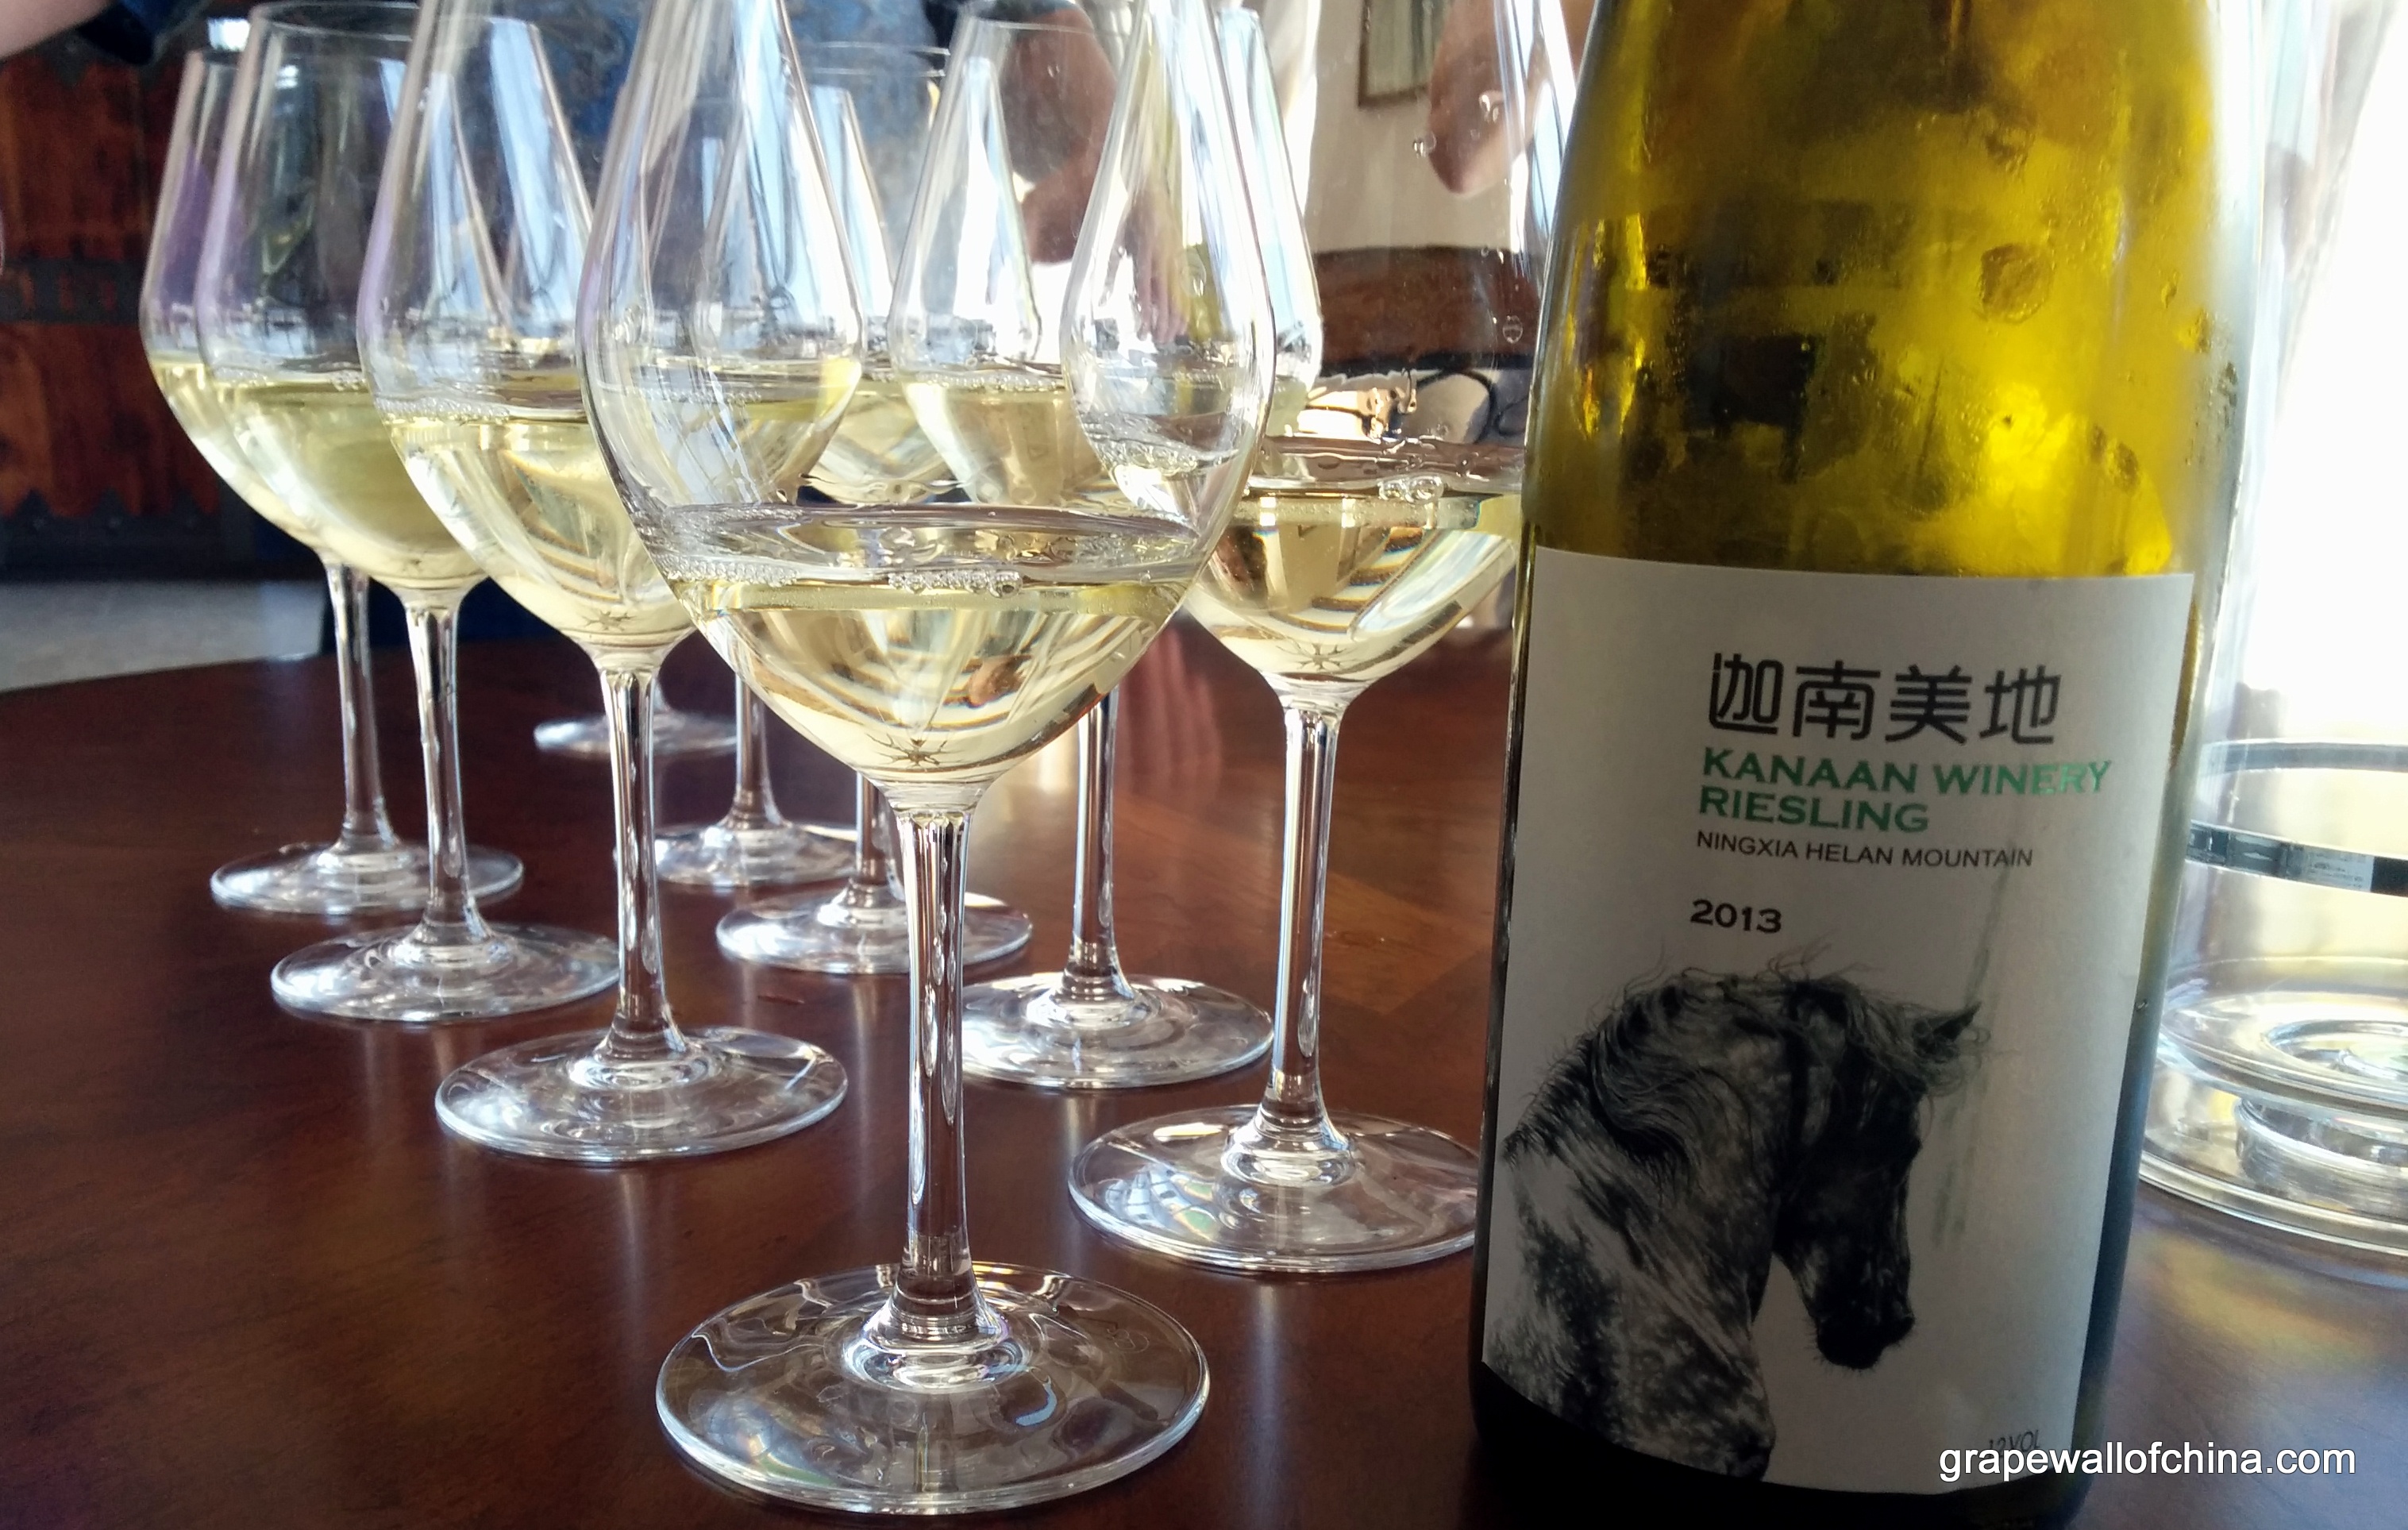 ningxia winemakers challenge visit wang fang at kanaan for riesling harvest (3)